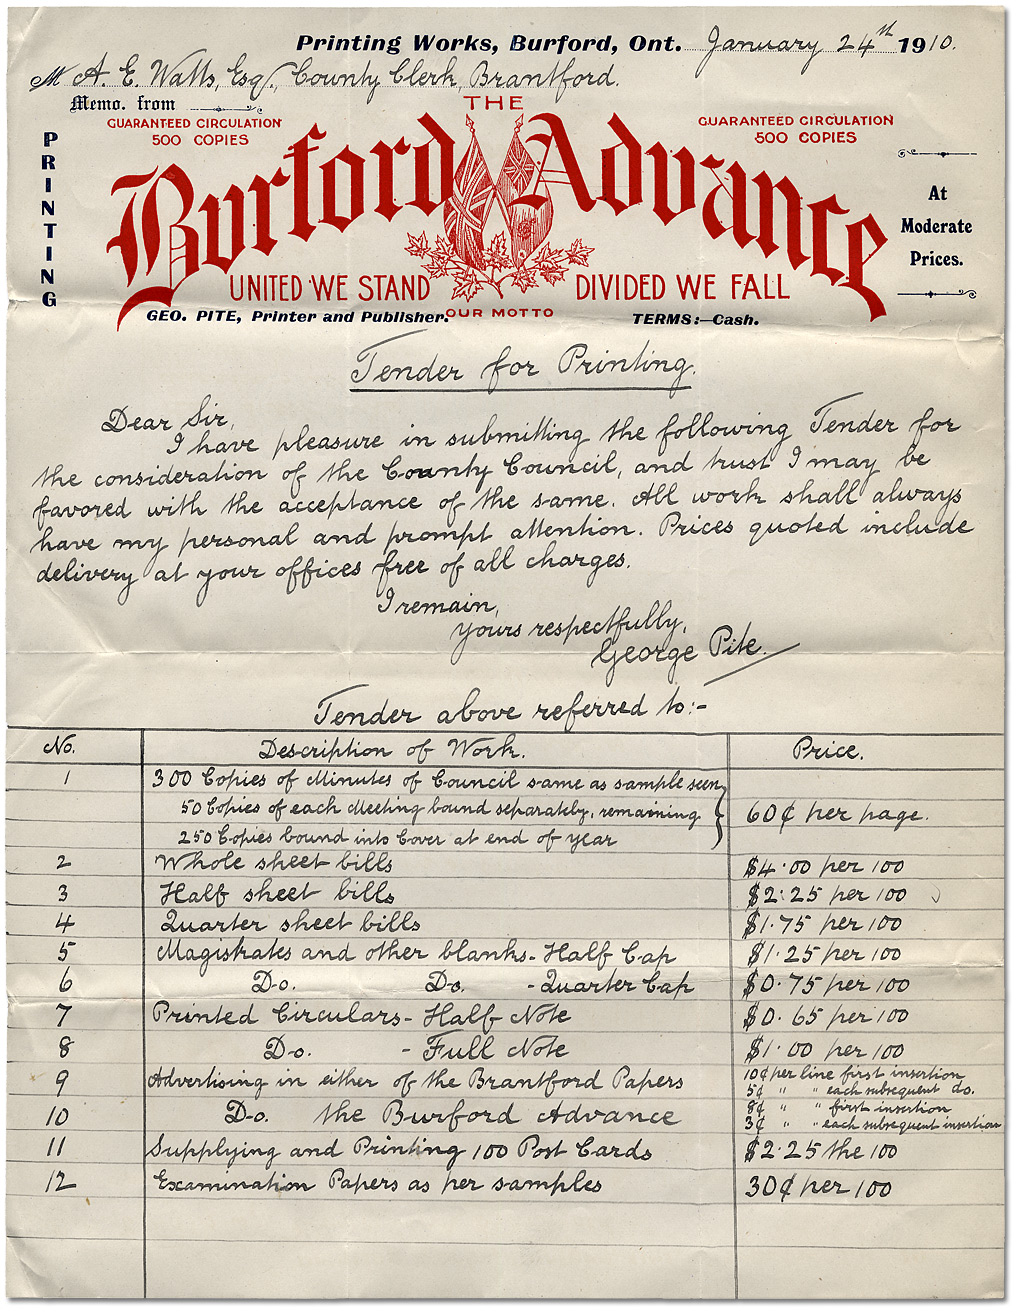 Soumission pour des services d'imprimerie, 24 janvier 1910